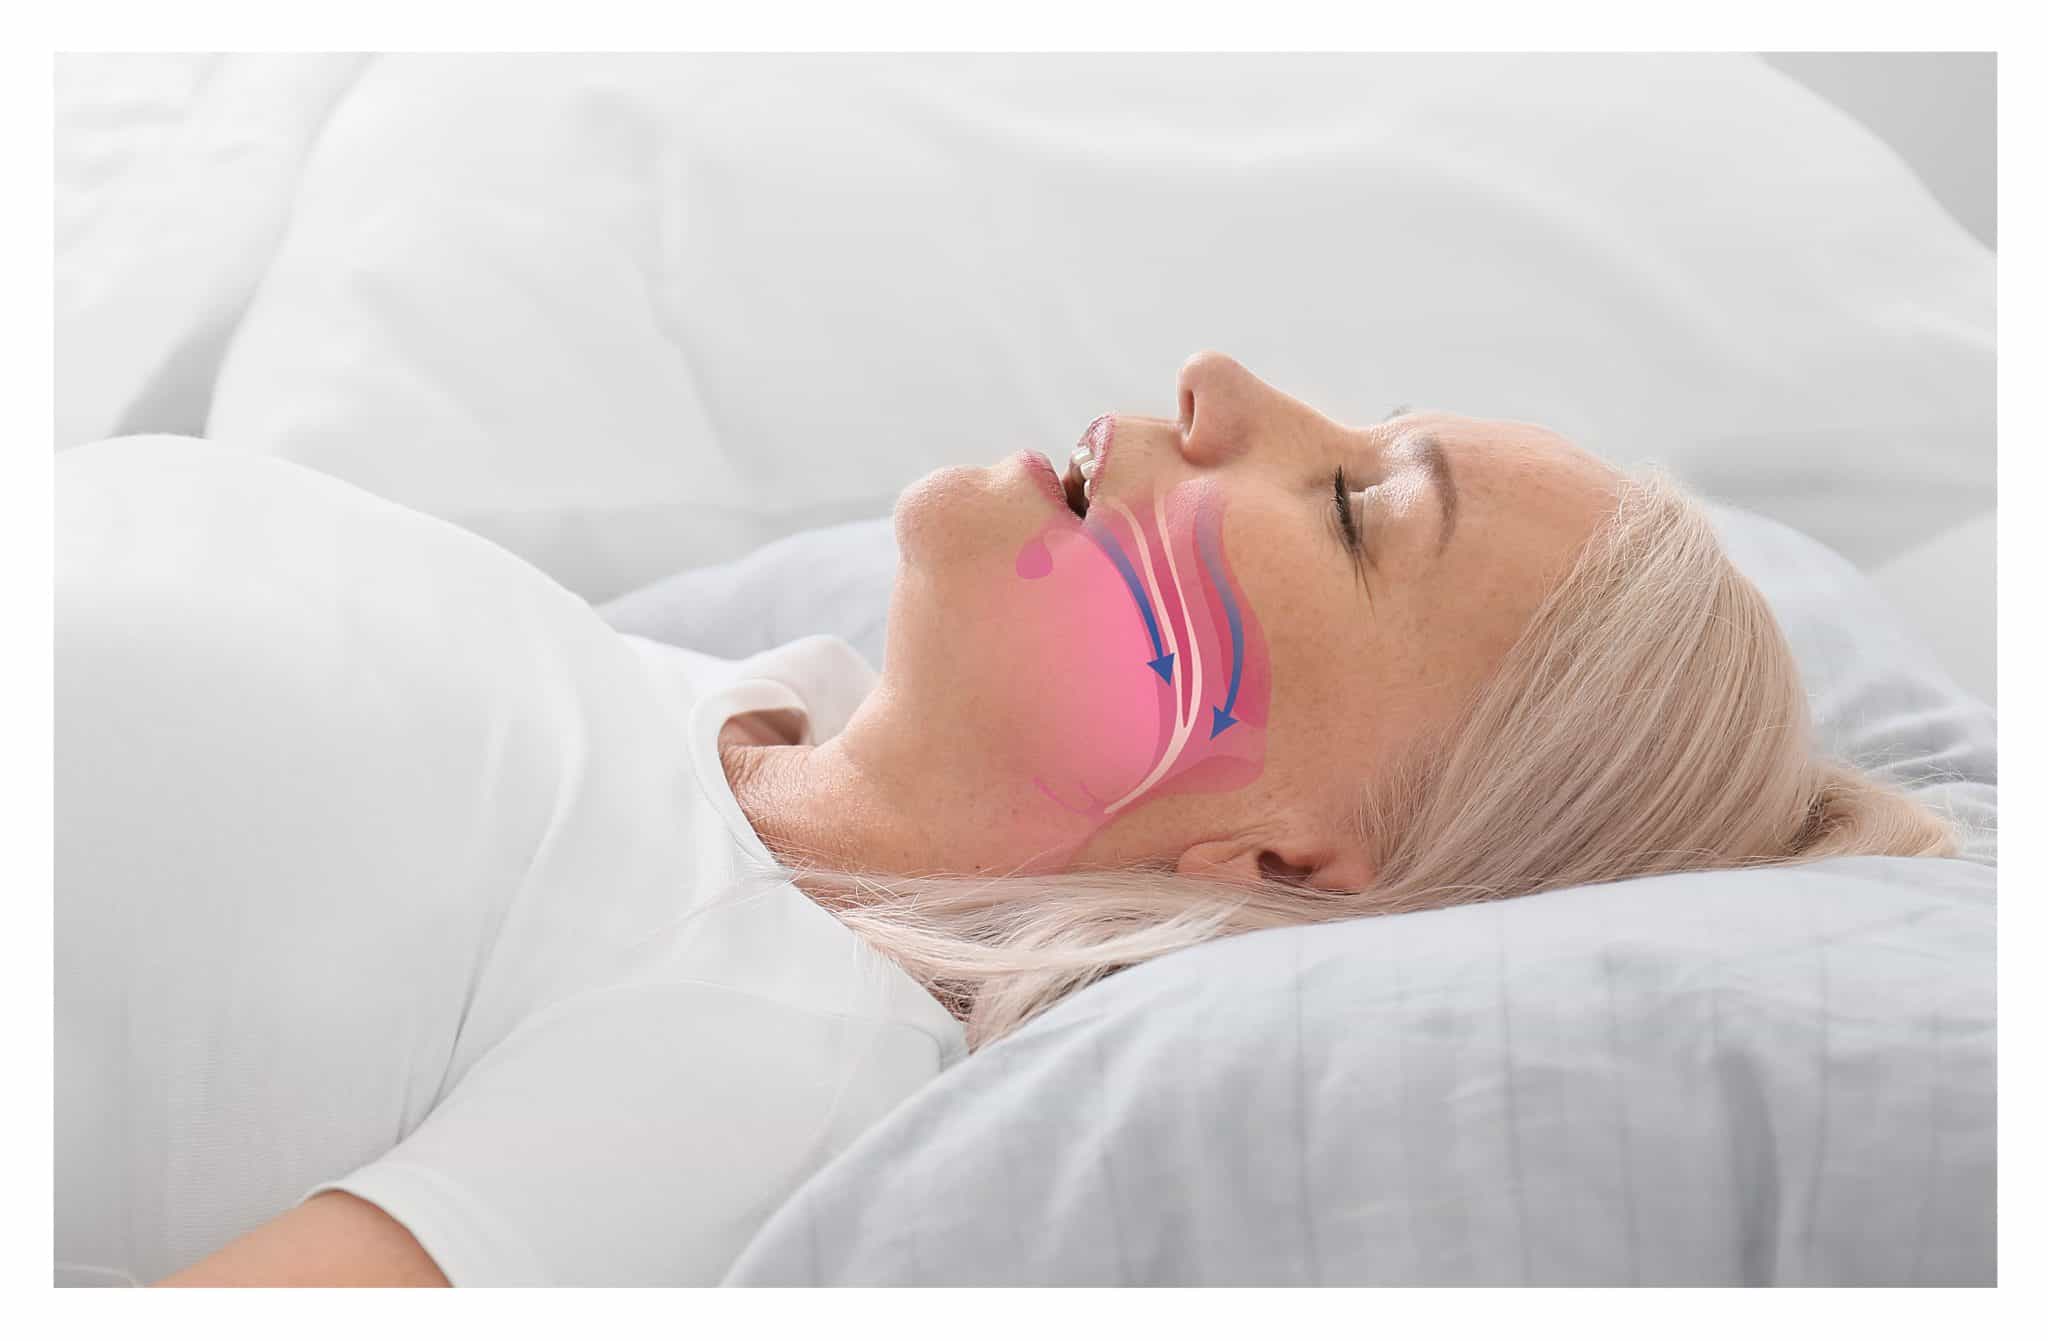 Illustrazione di come funziona apnea notturna ostruttiva su immagine di donna che dorme